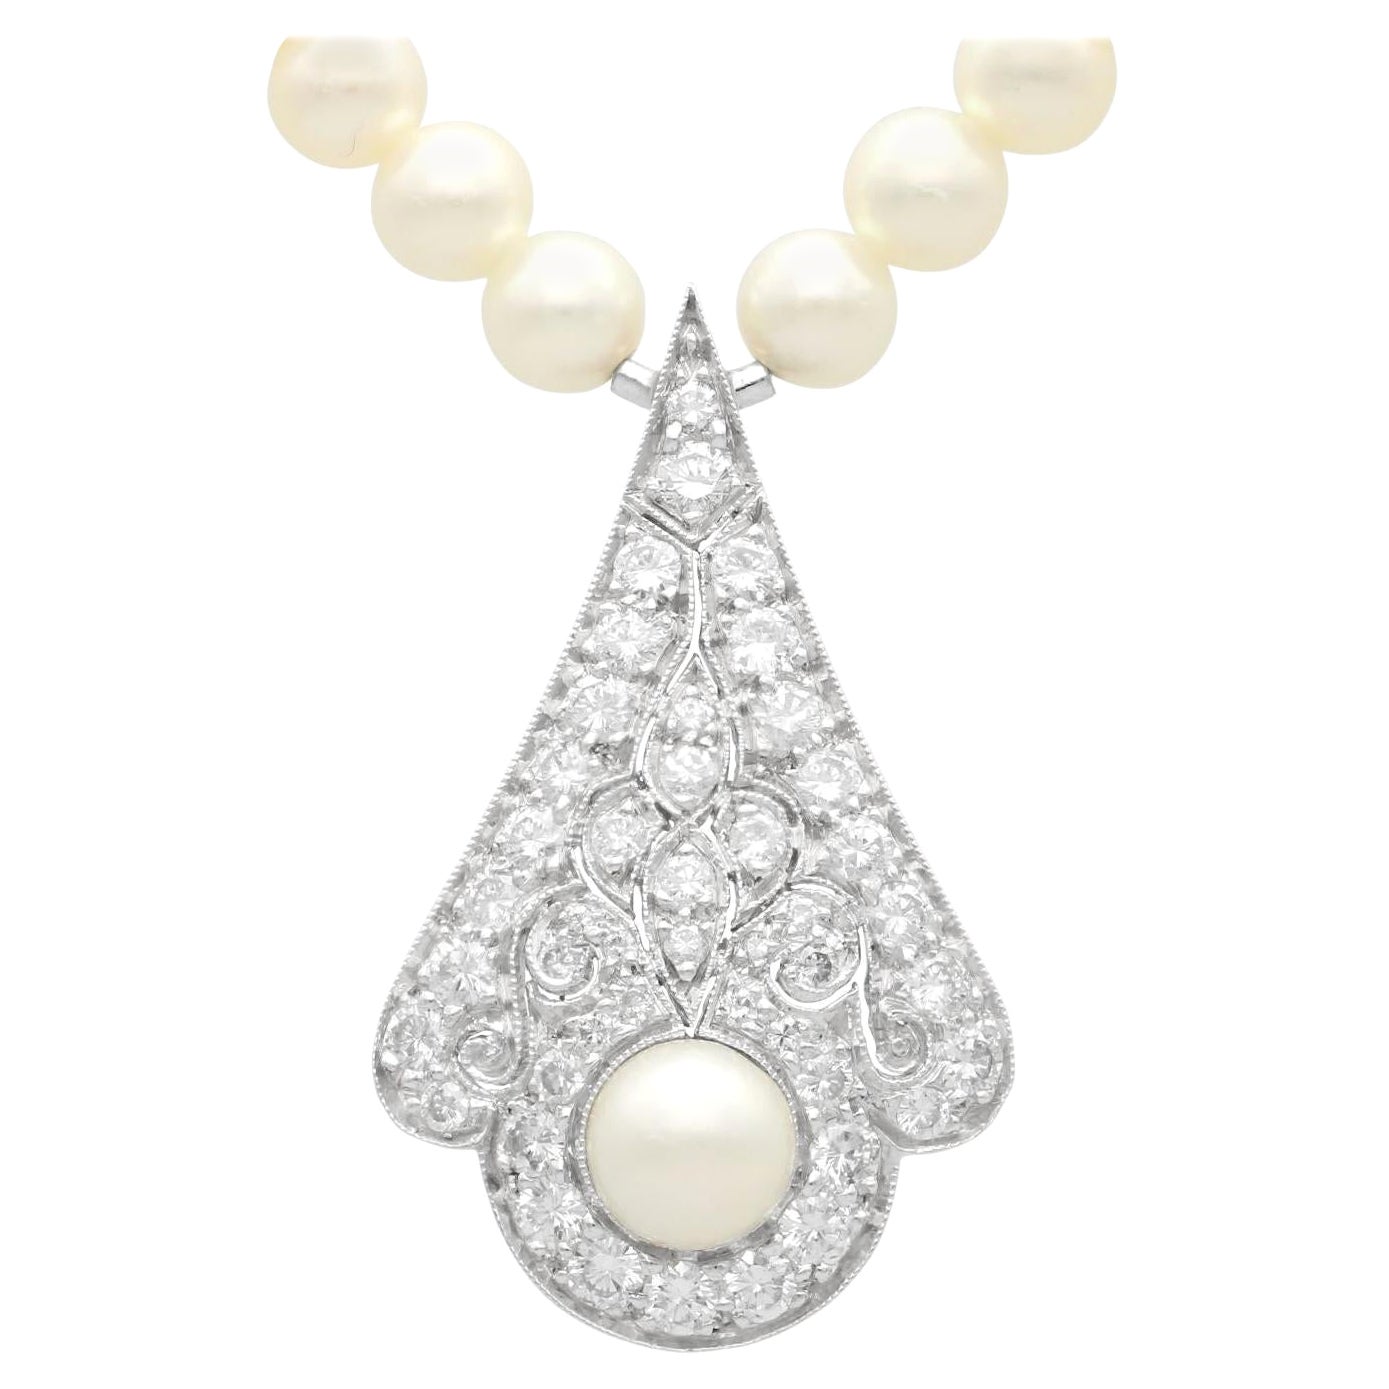 Collier vintage en or blanc 18 carats avec perles de culture et diamants de 1,48 carat, c. 1990